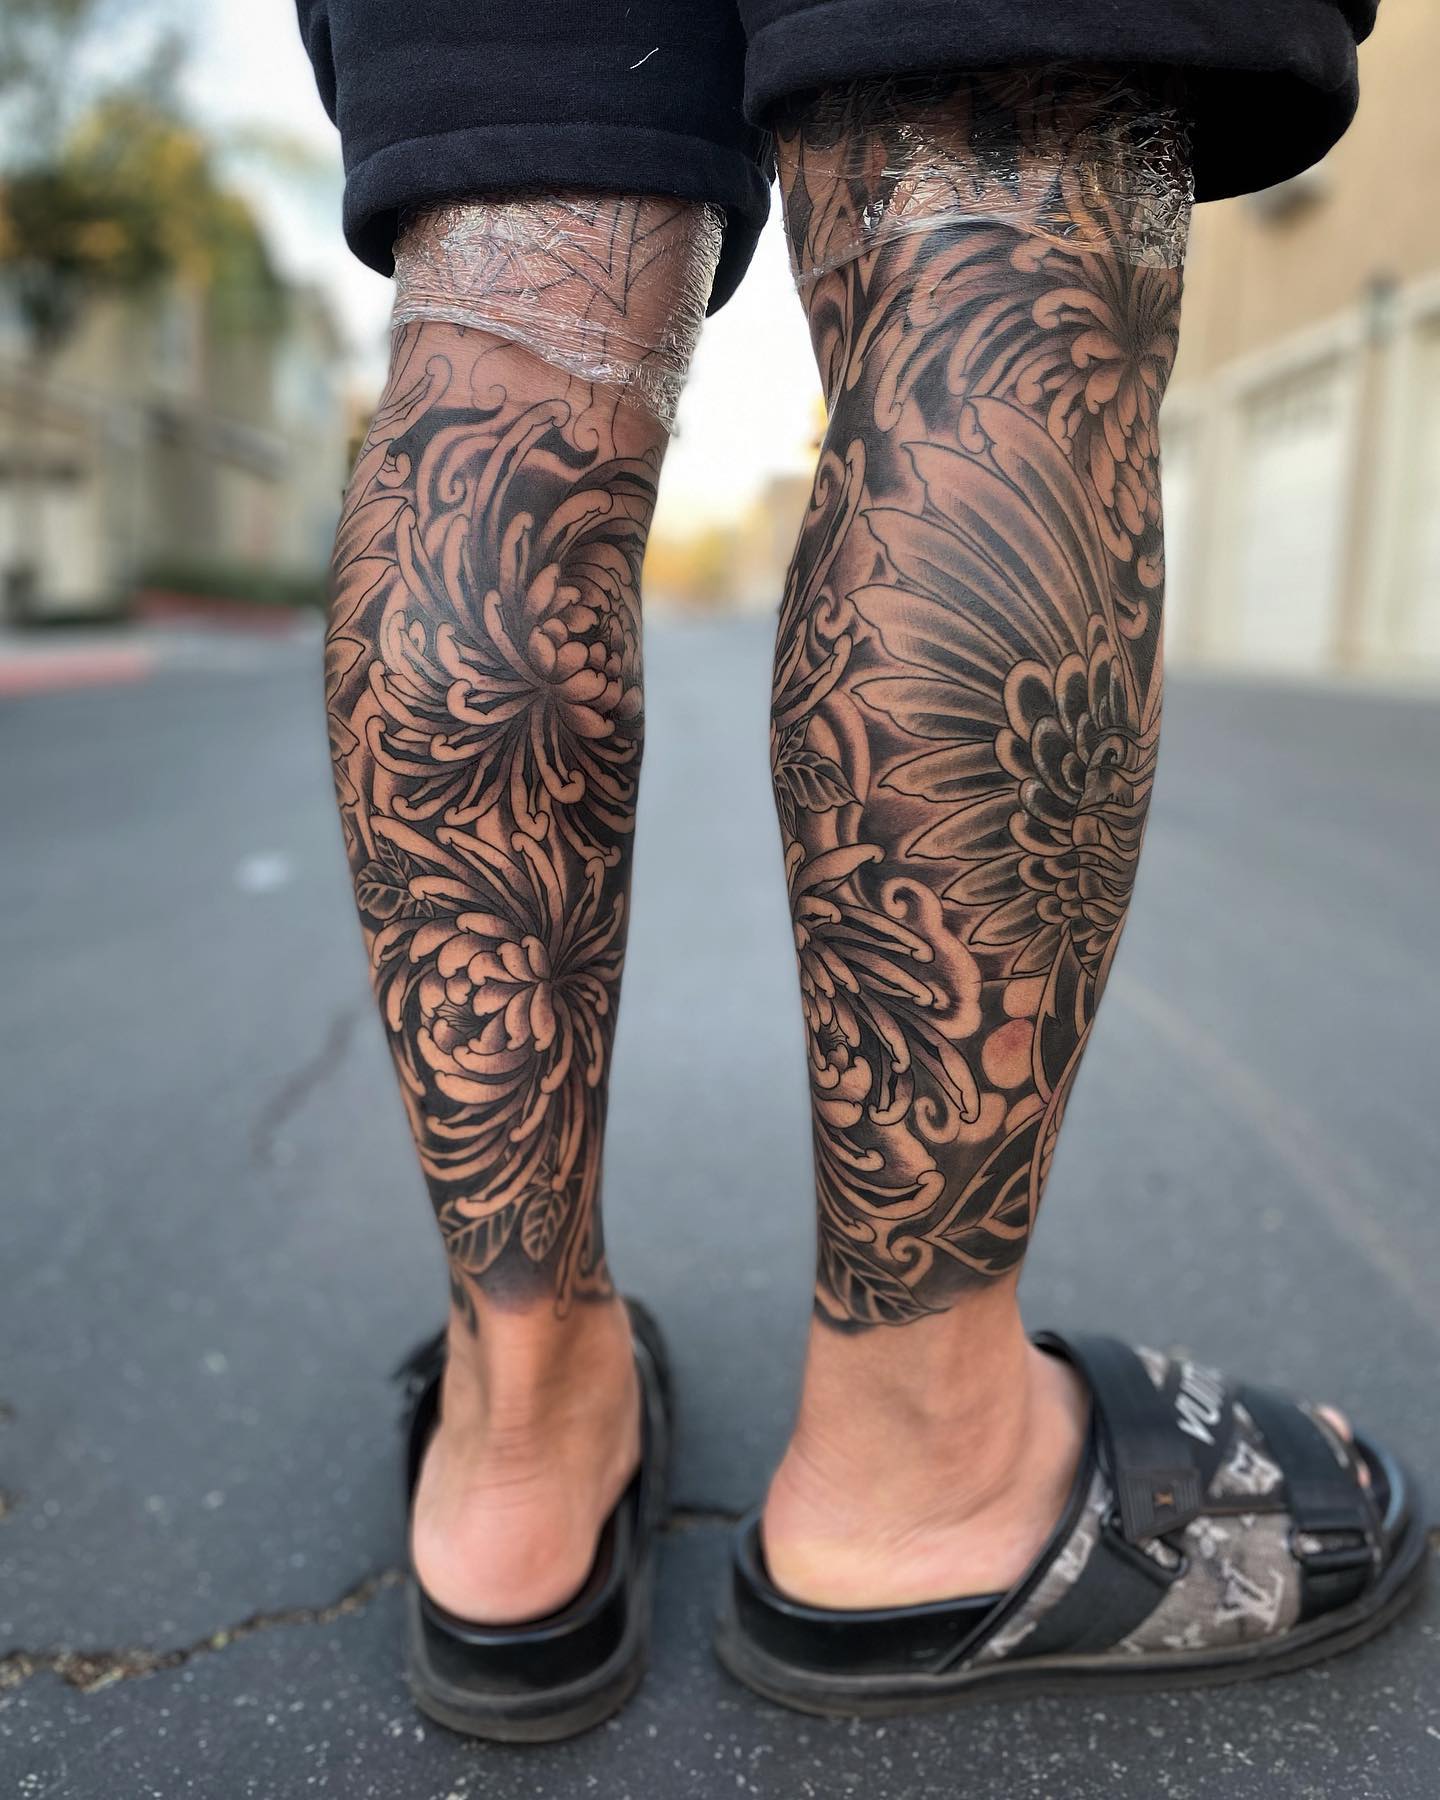 Best calf tattoos male